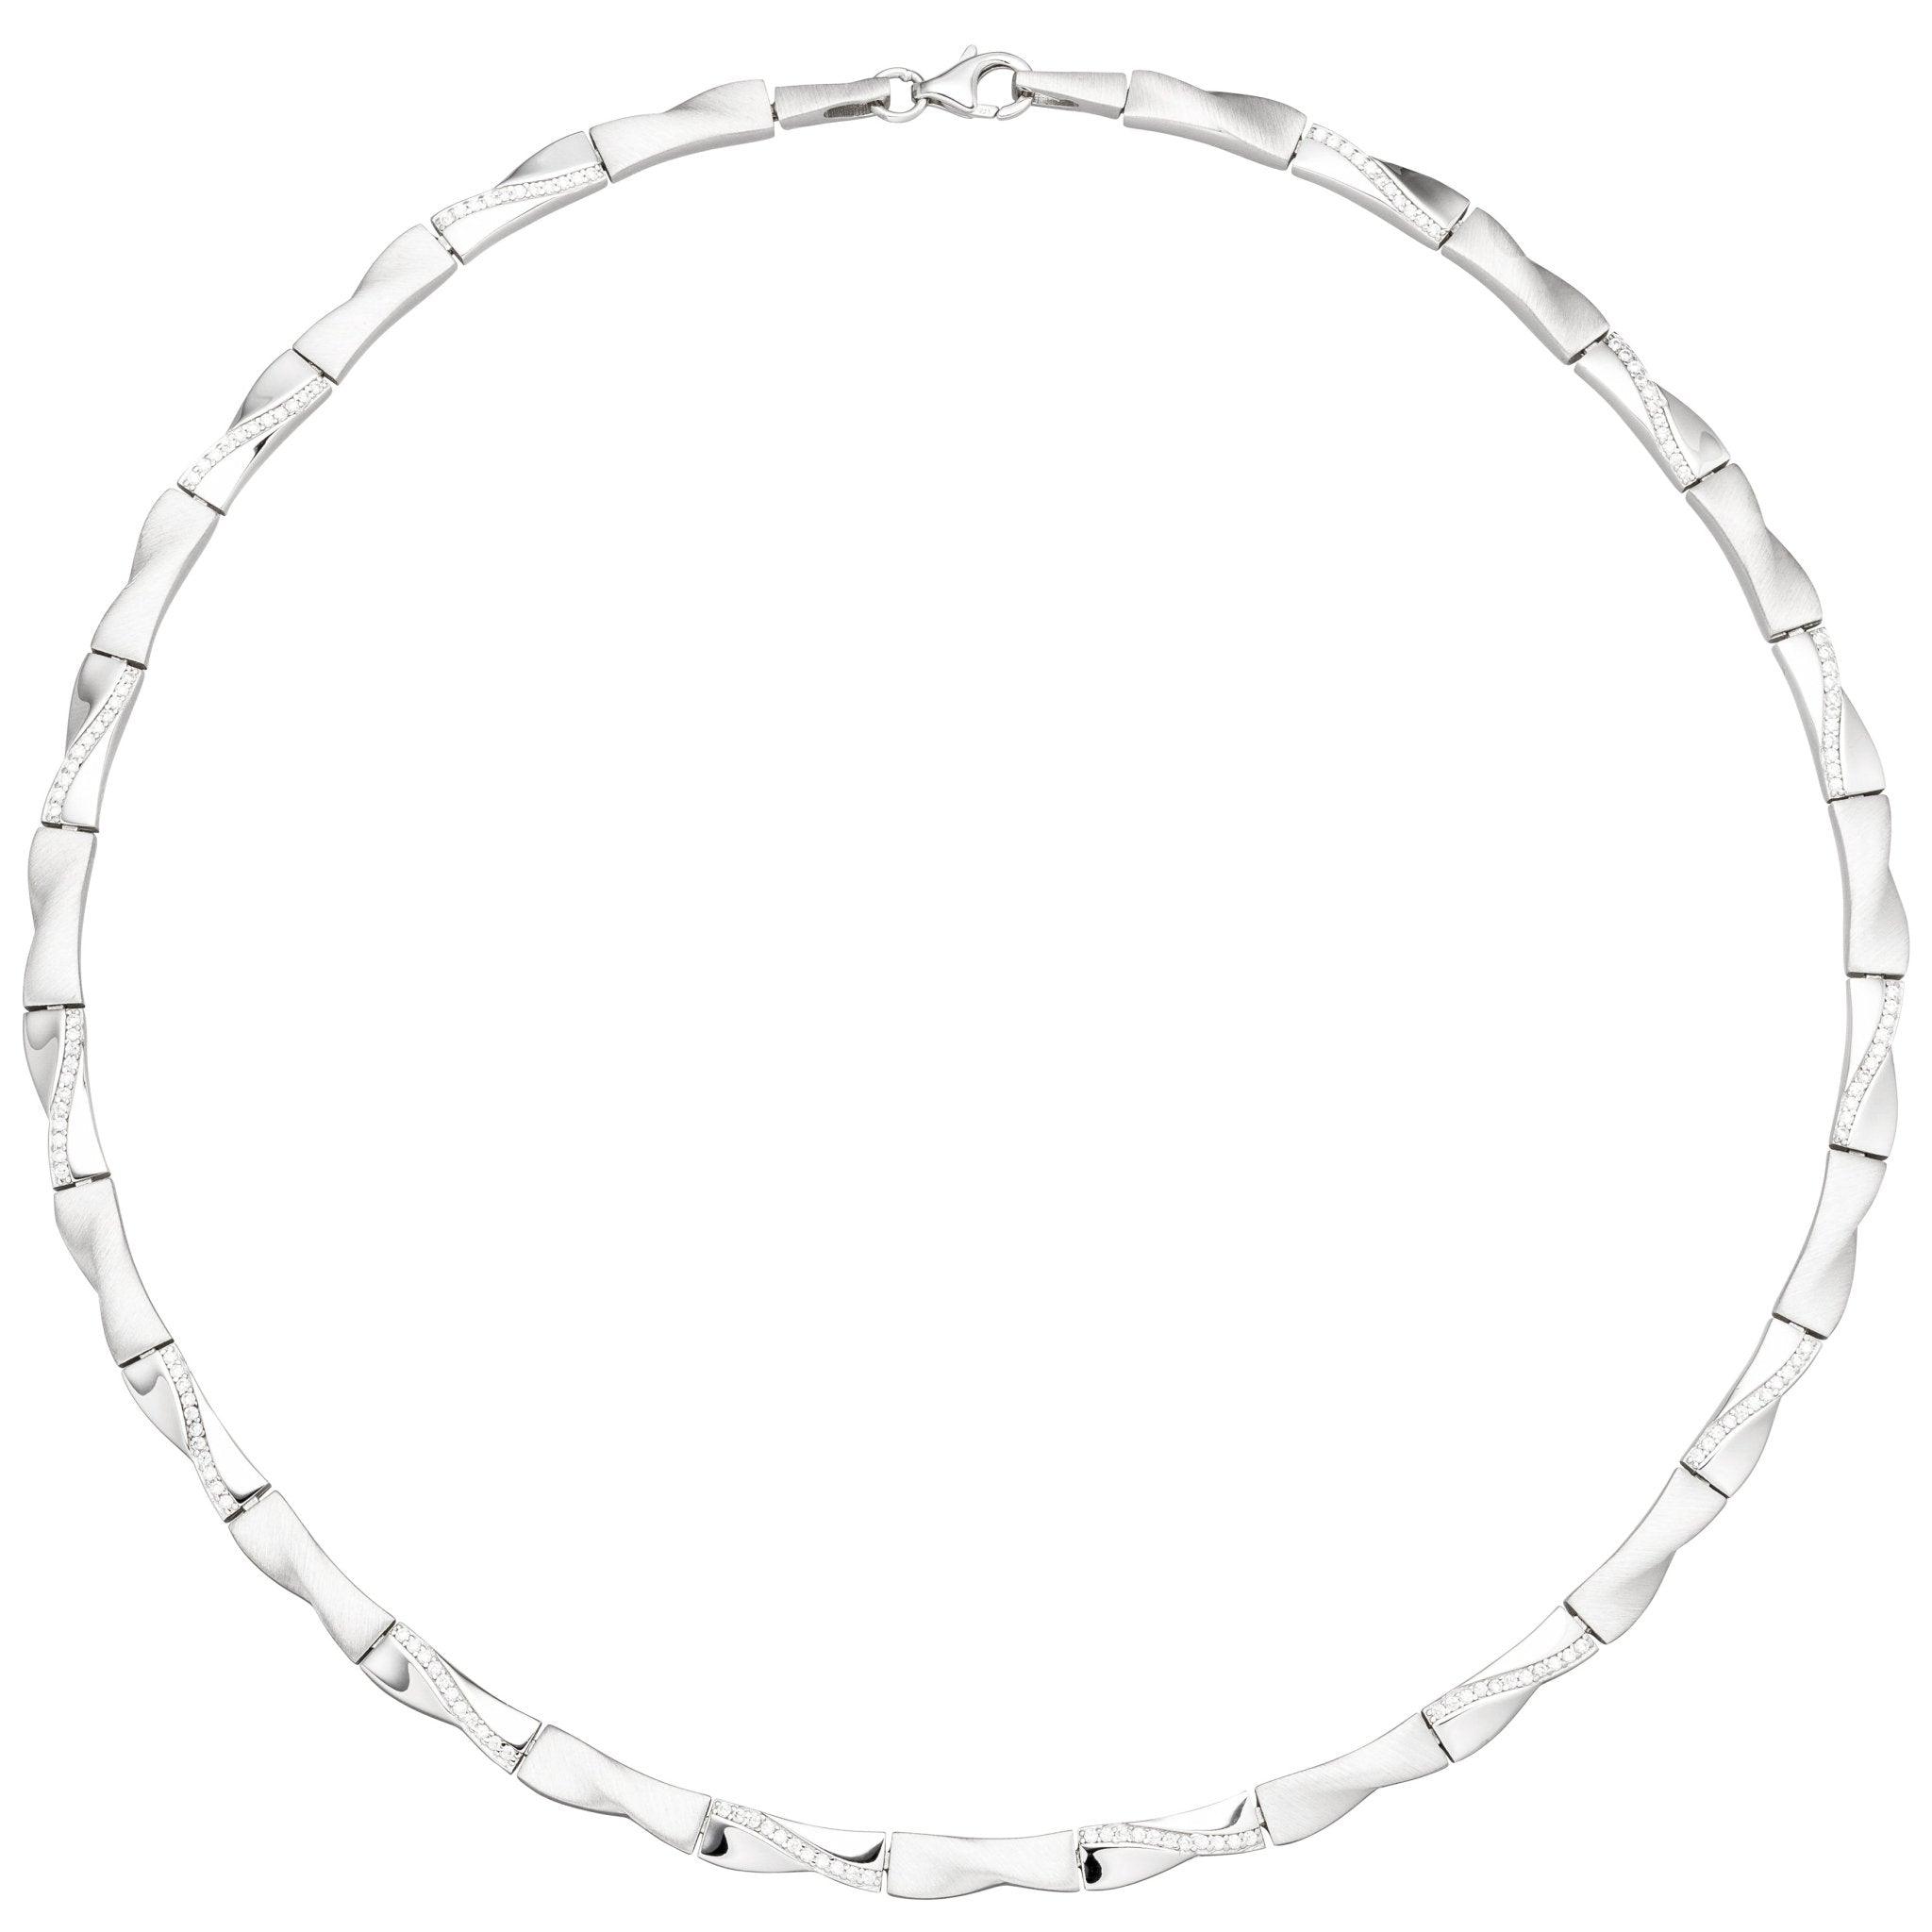 Collier Halskette 925 Silber 154 45 Zirkonia cm Silberkette-Collier Kette